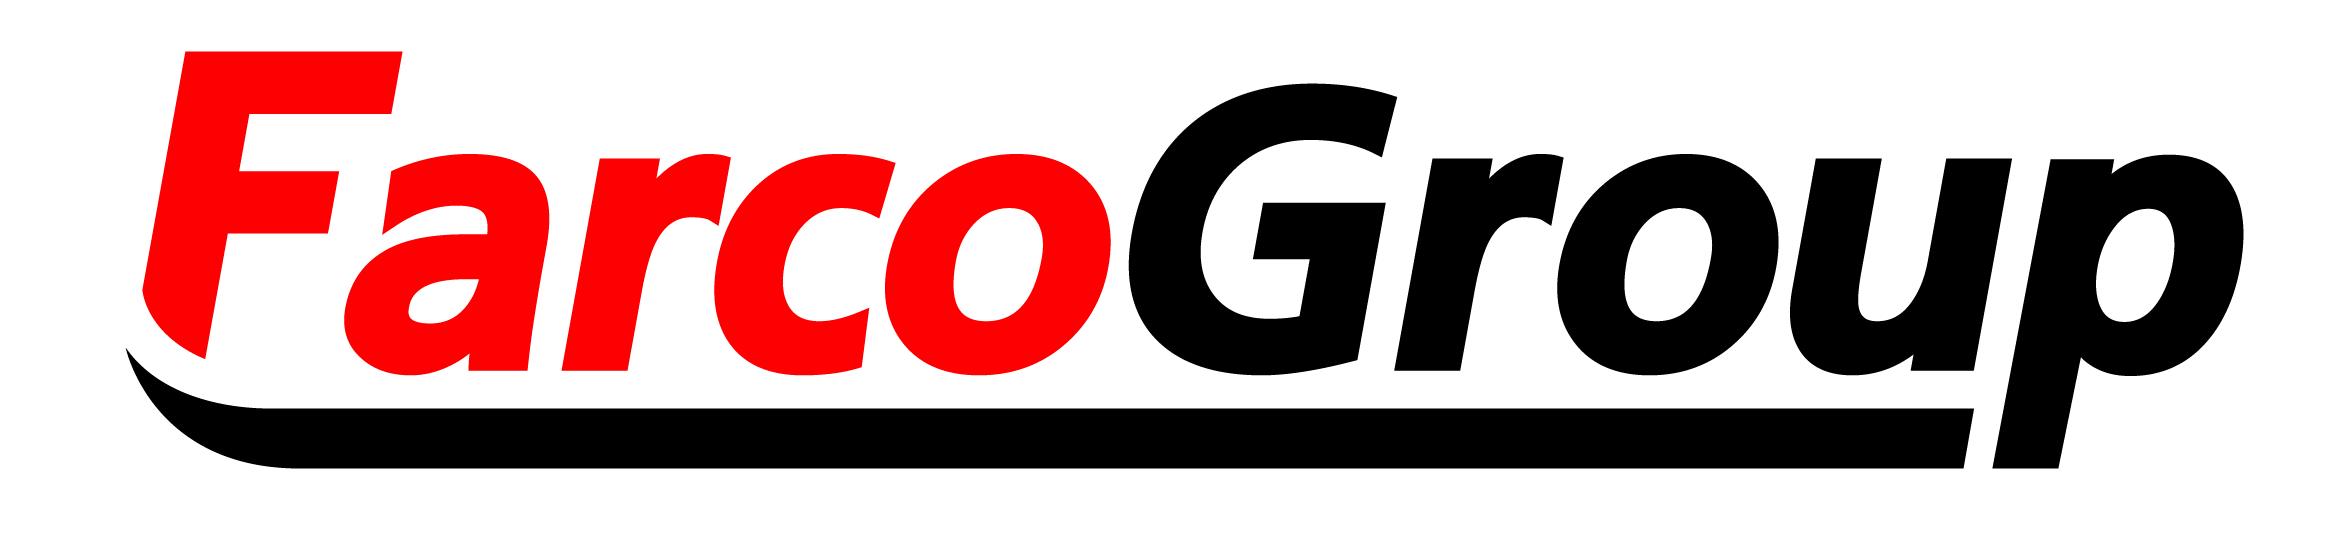 farco group logo logo